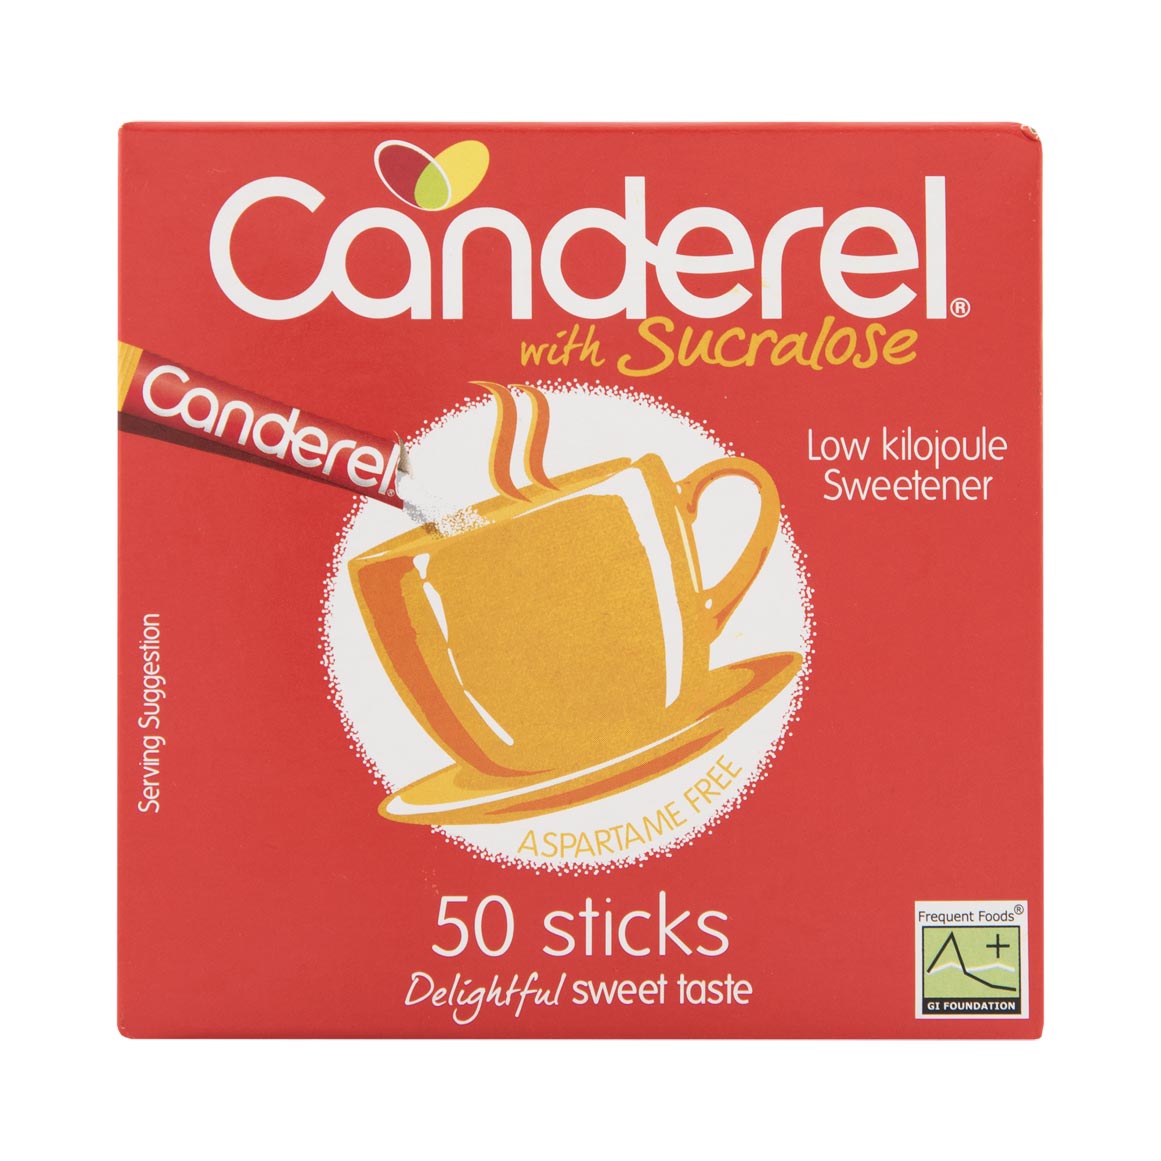 CANDEREL - Canderel 50 Sticks Vanilla 100% Sucralose, 100G - 100G